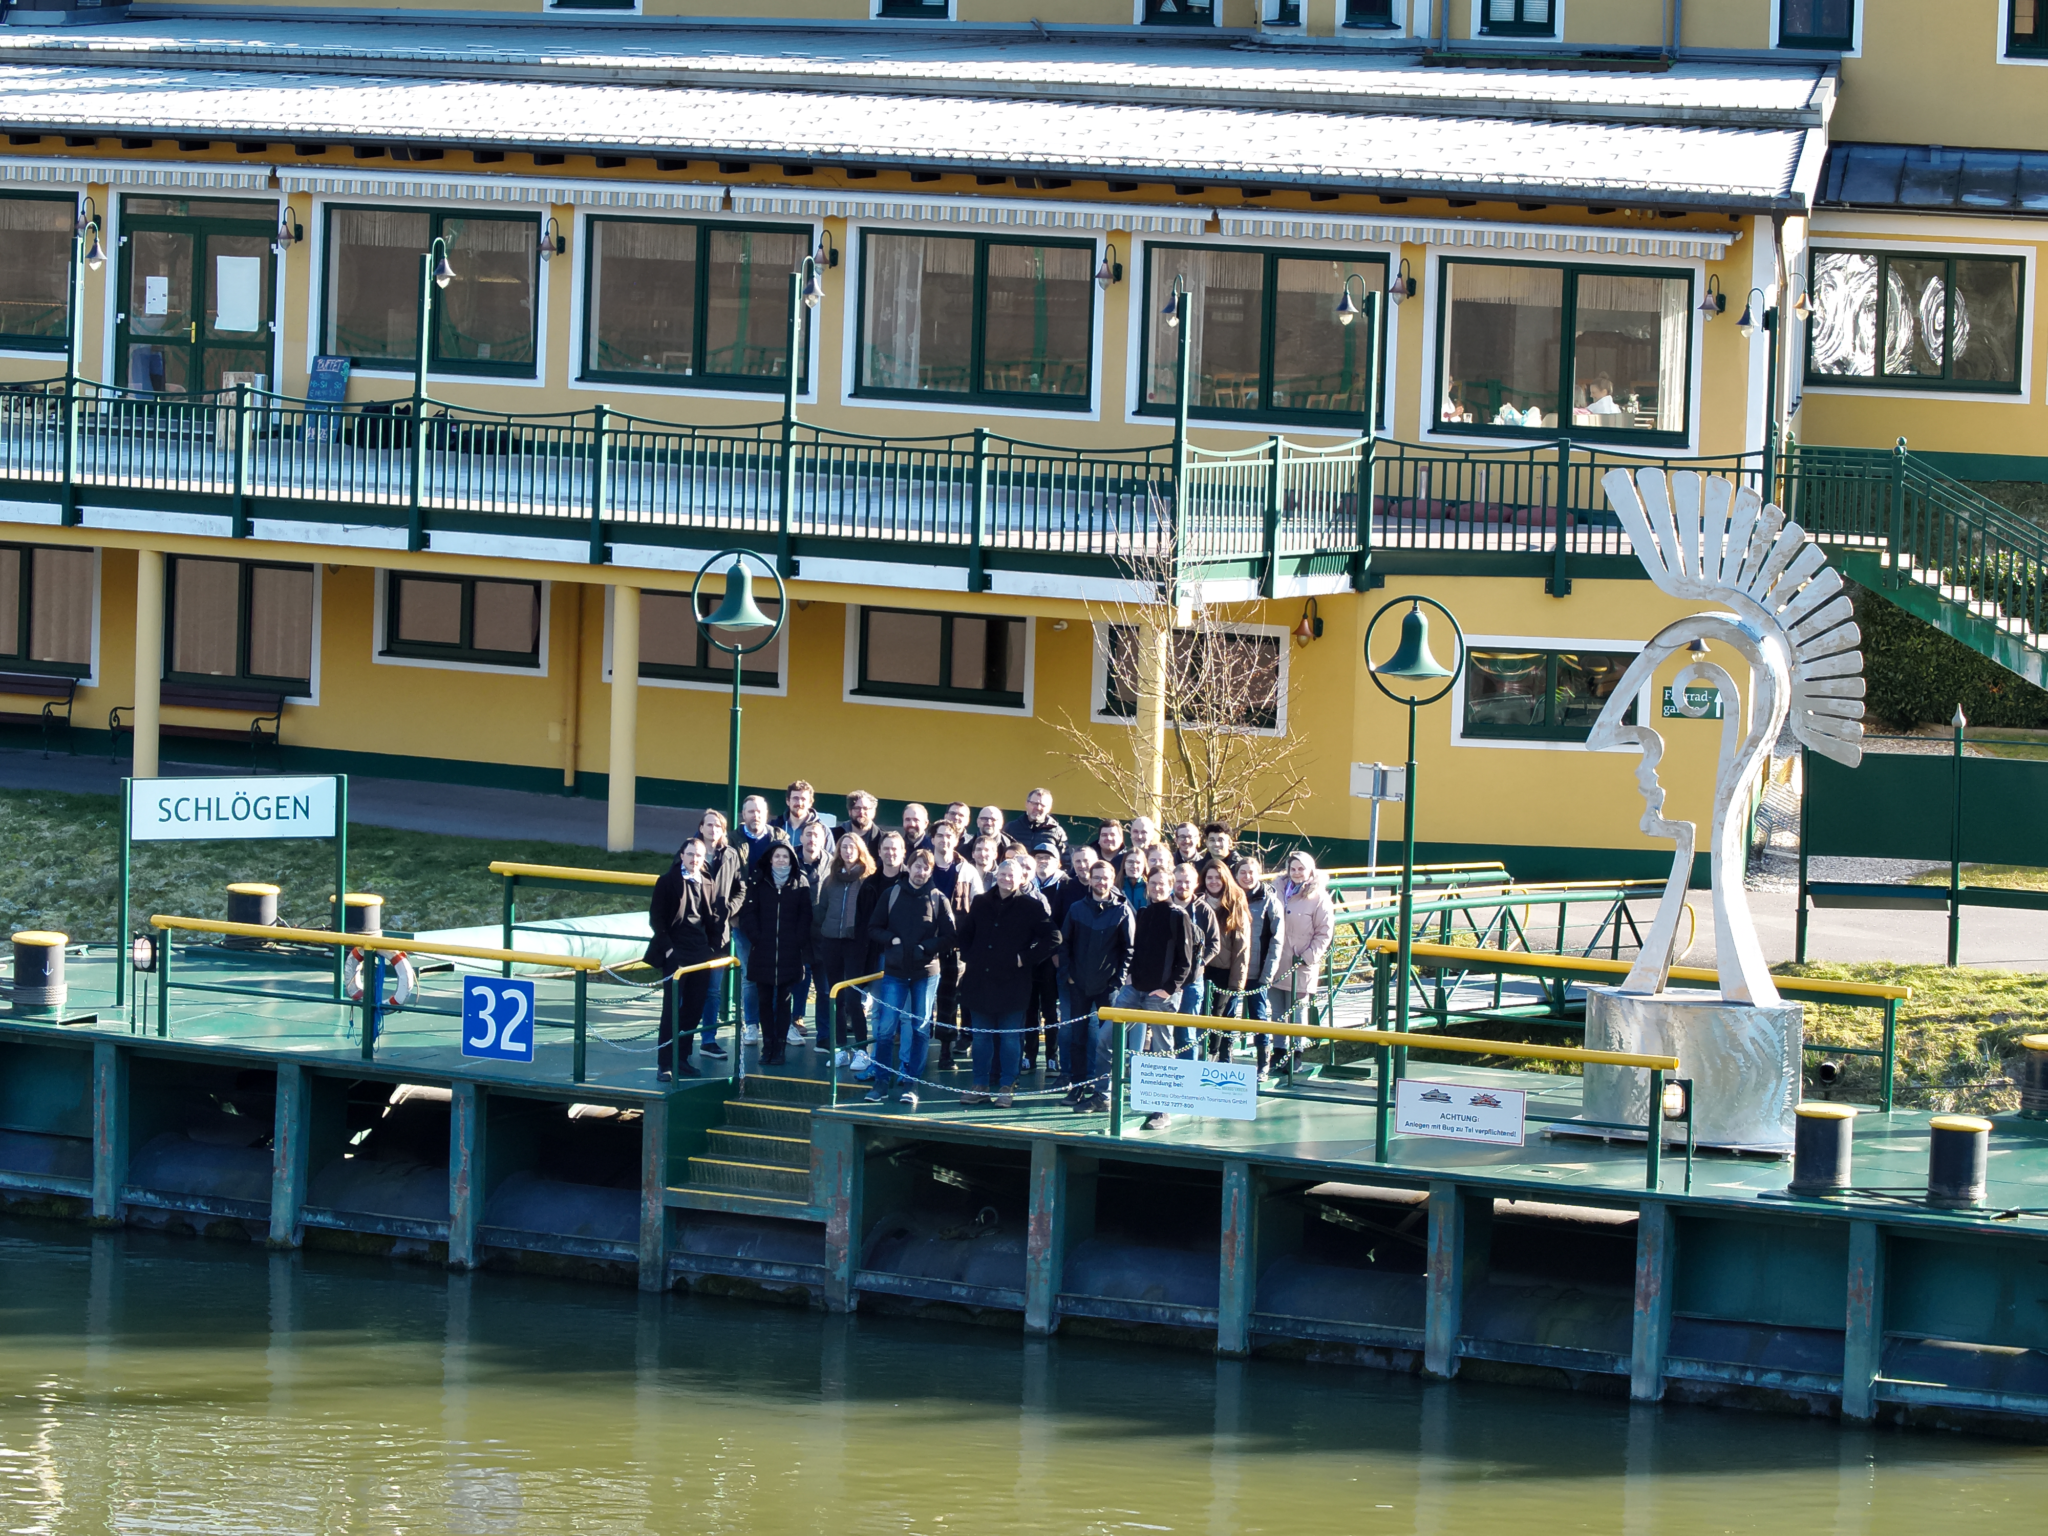 Eine Gruppe von Mensschen stehen am Bootssteg und warten